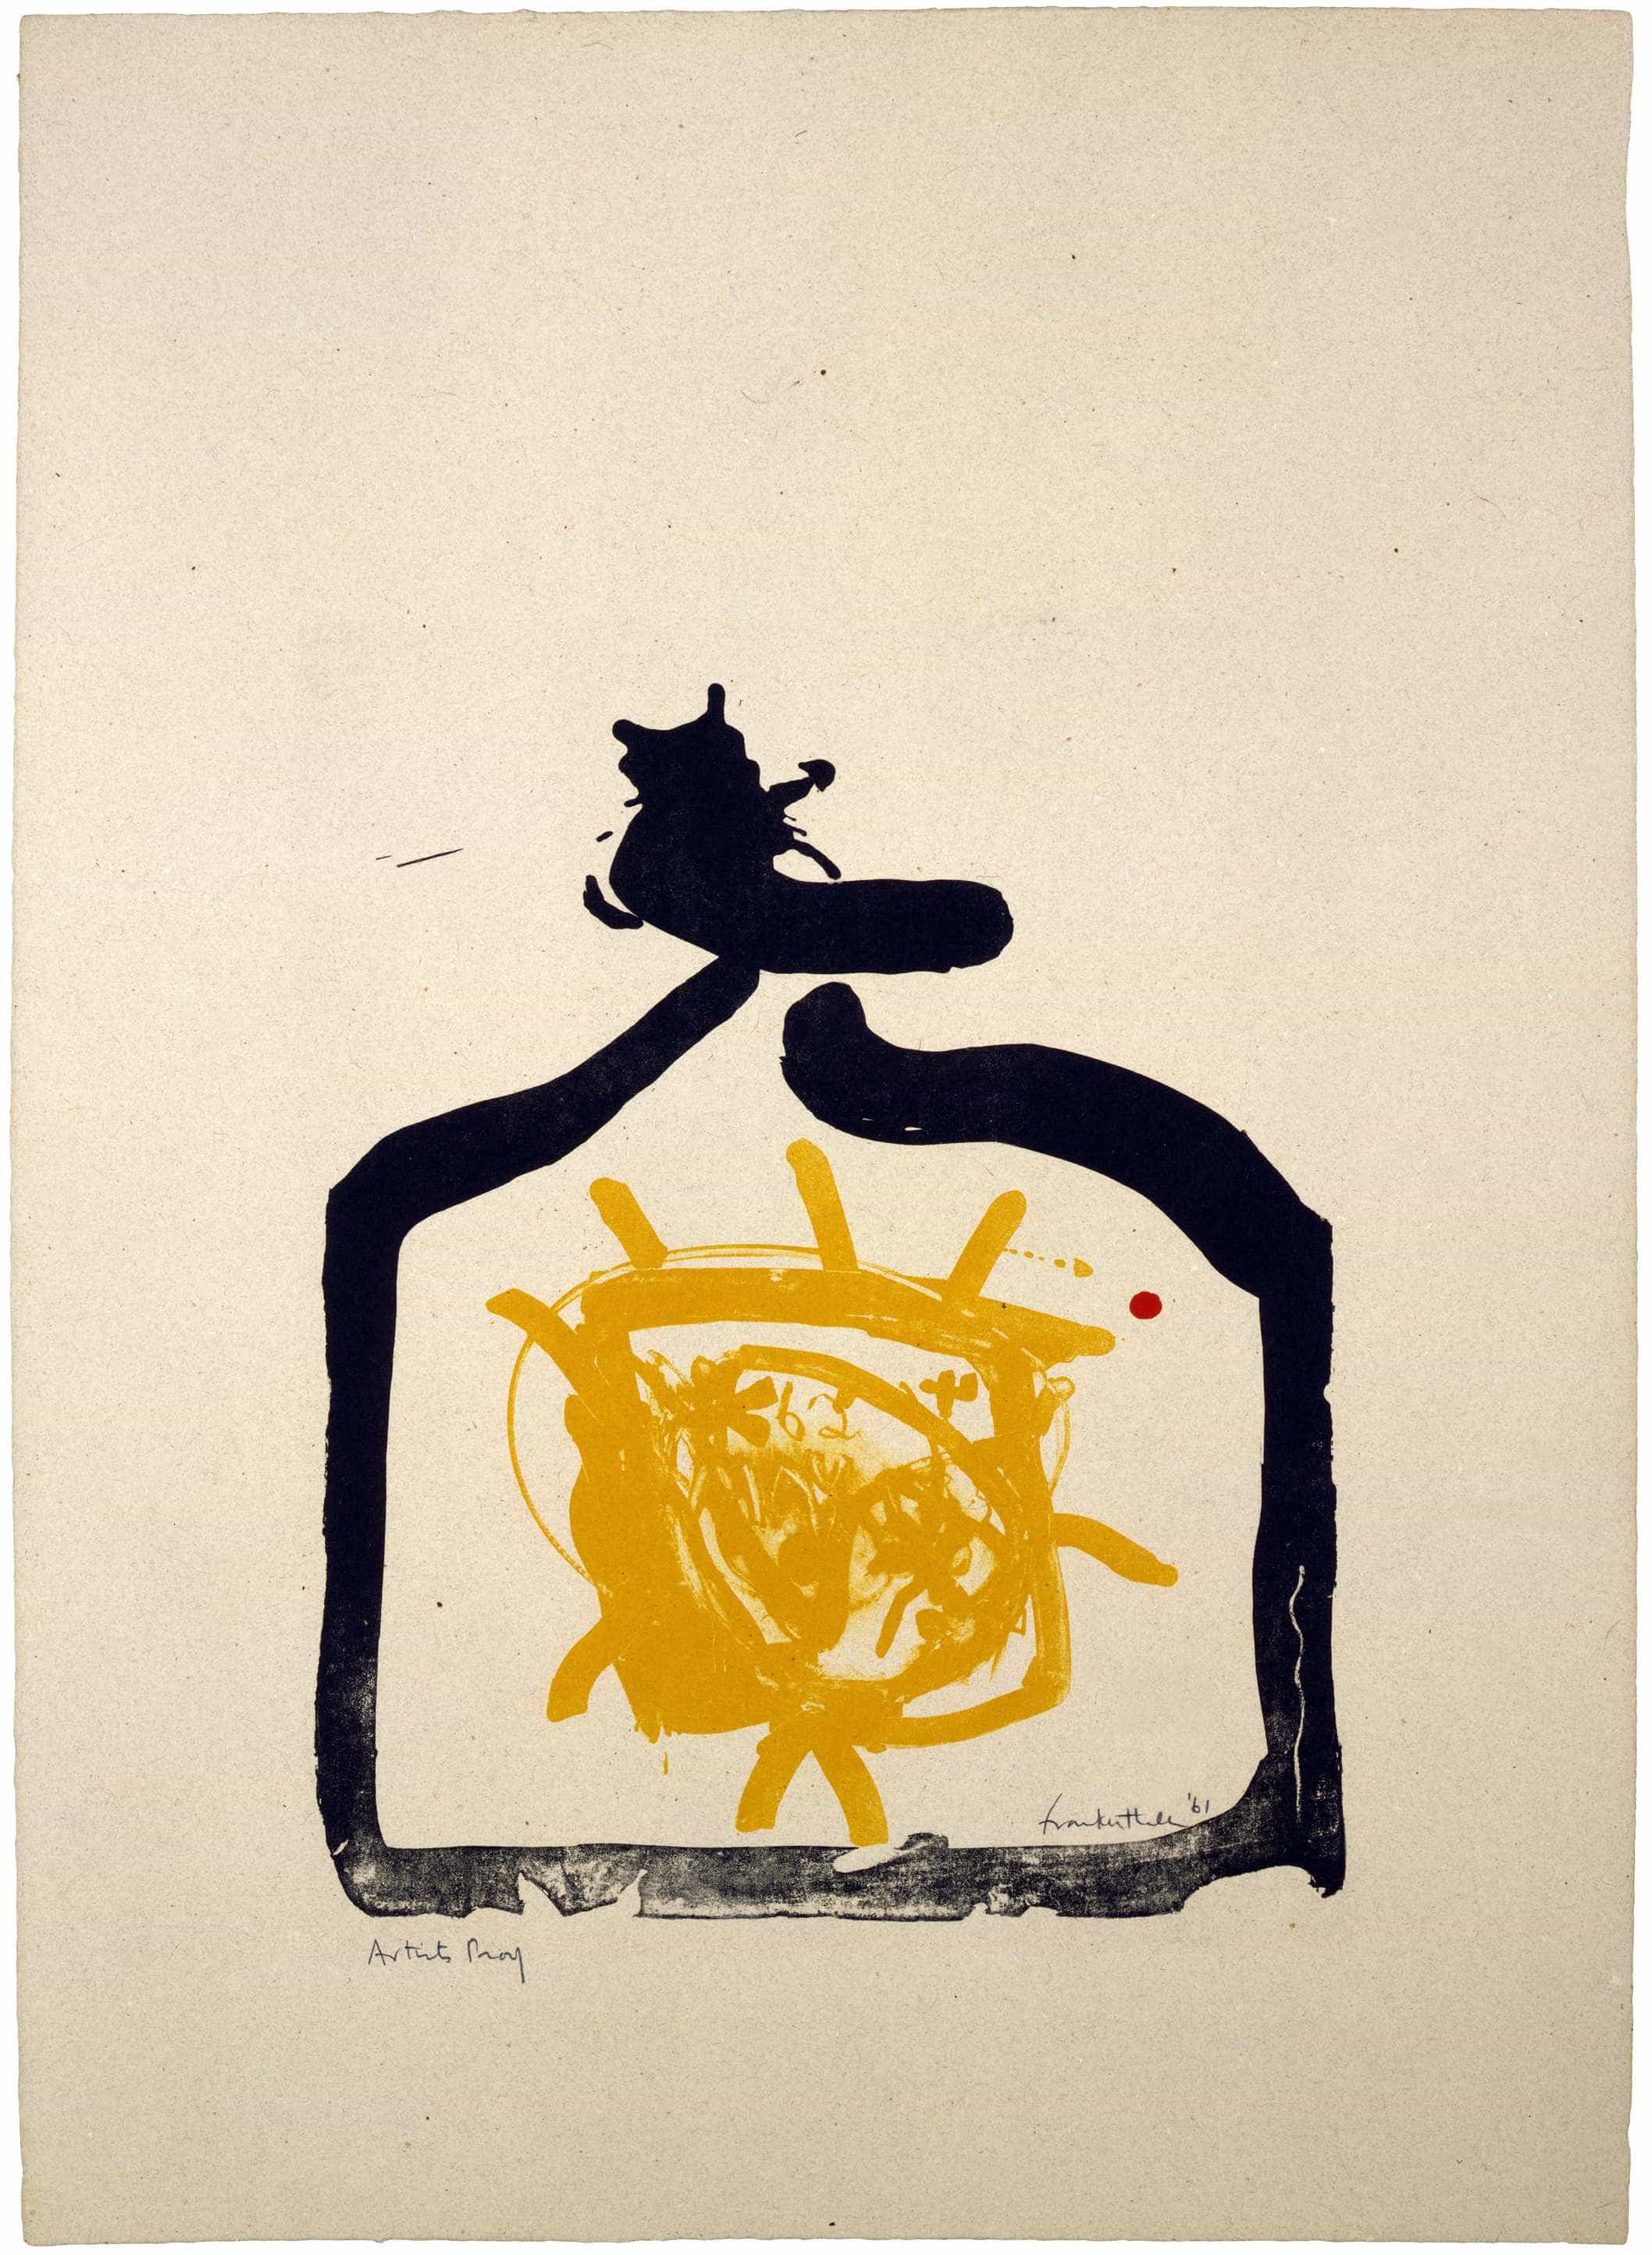 Helen Frankenthaler, May 26th Backwards, 1961